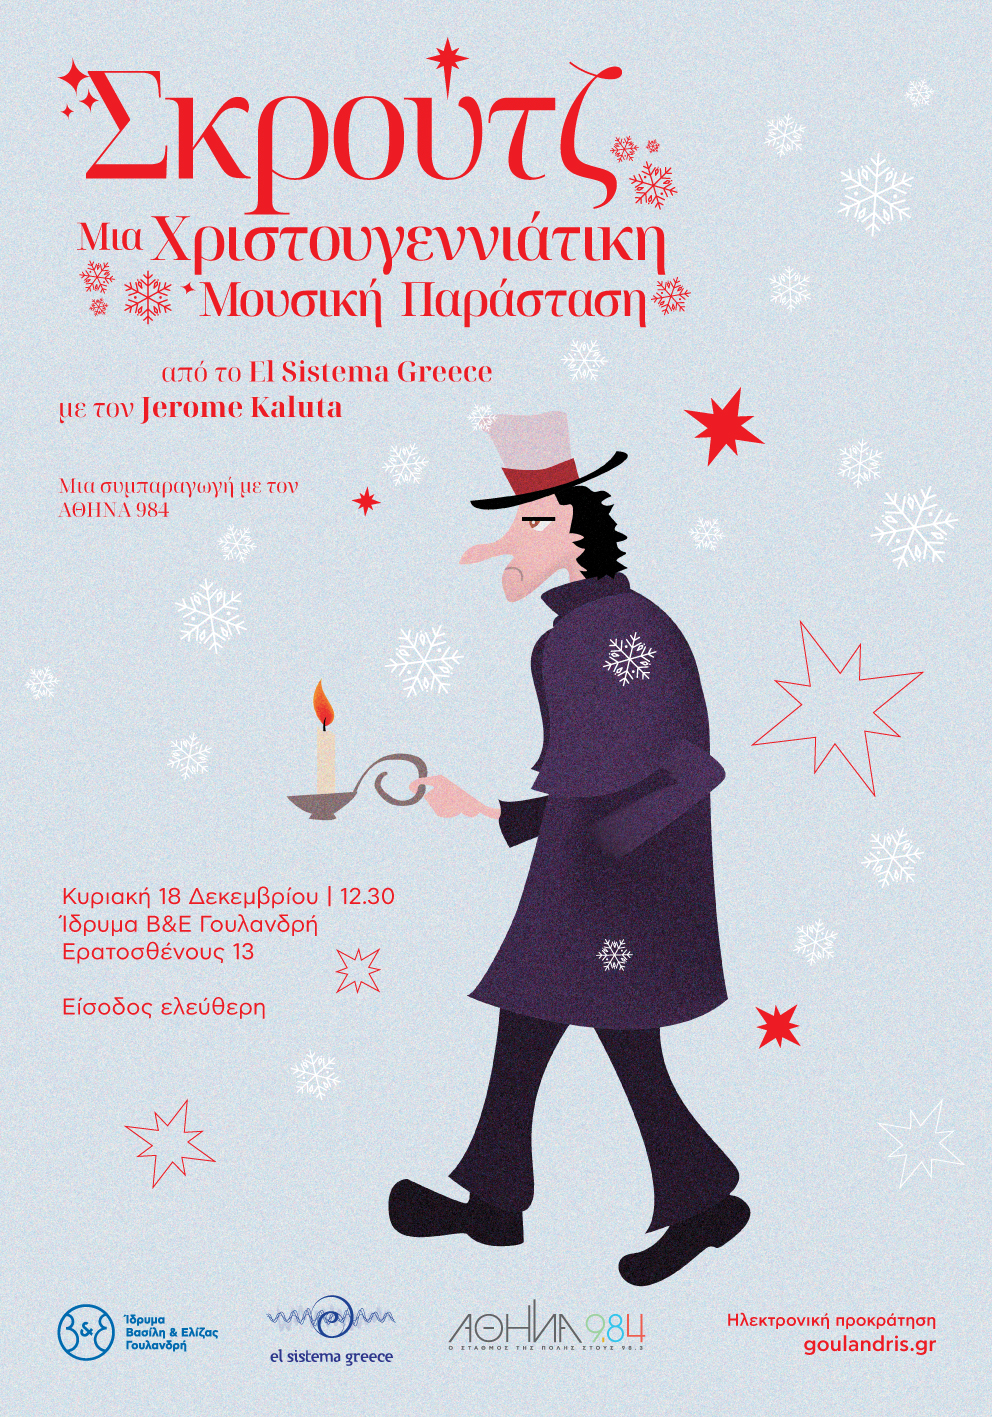 Σκρουτζ: Μια χριστουγεννιάτικη μουσική παράσταση από το El Sistema Greece στο Ίδρυμα Γουλανδρή